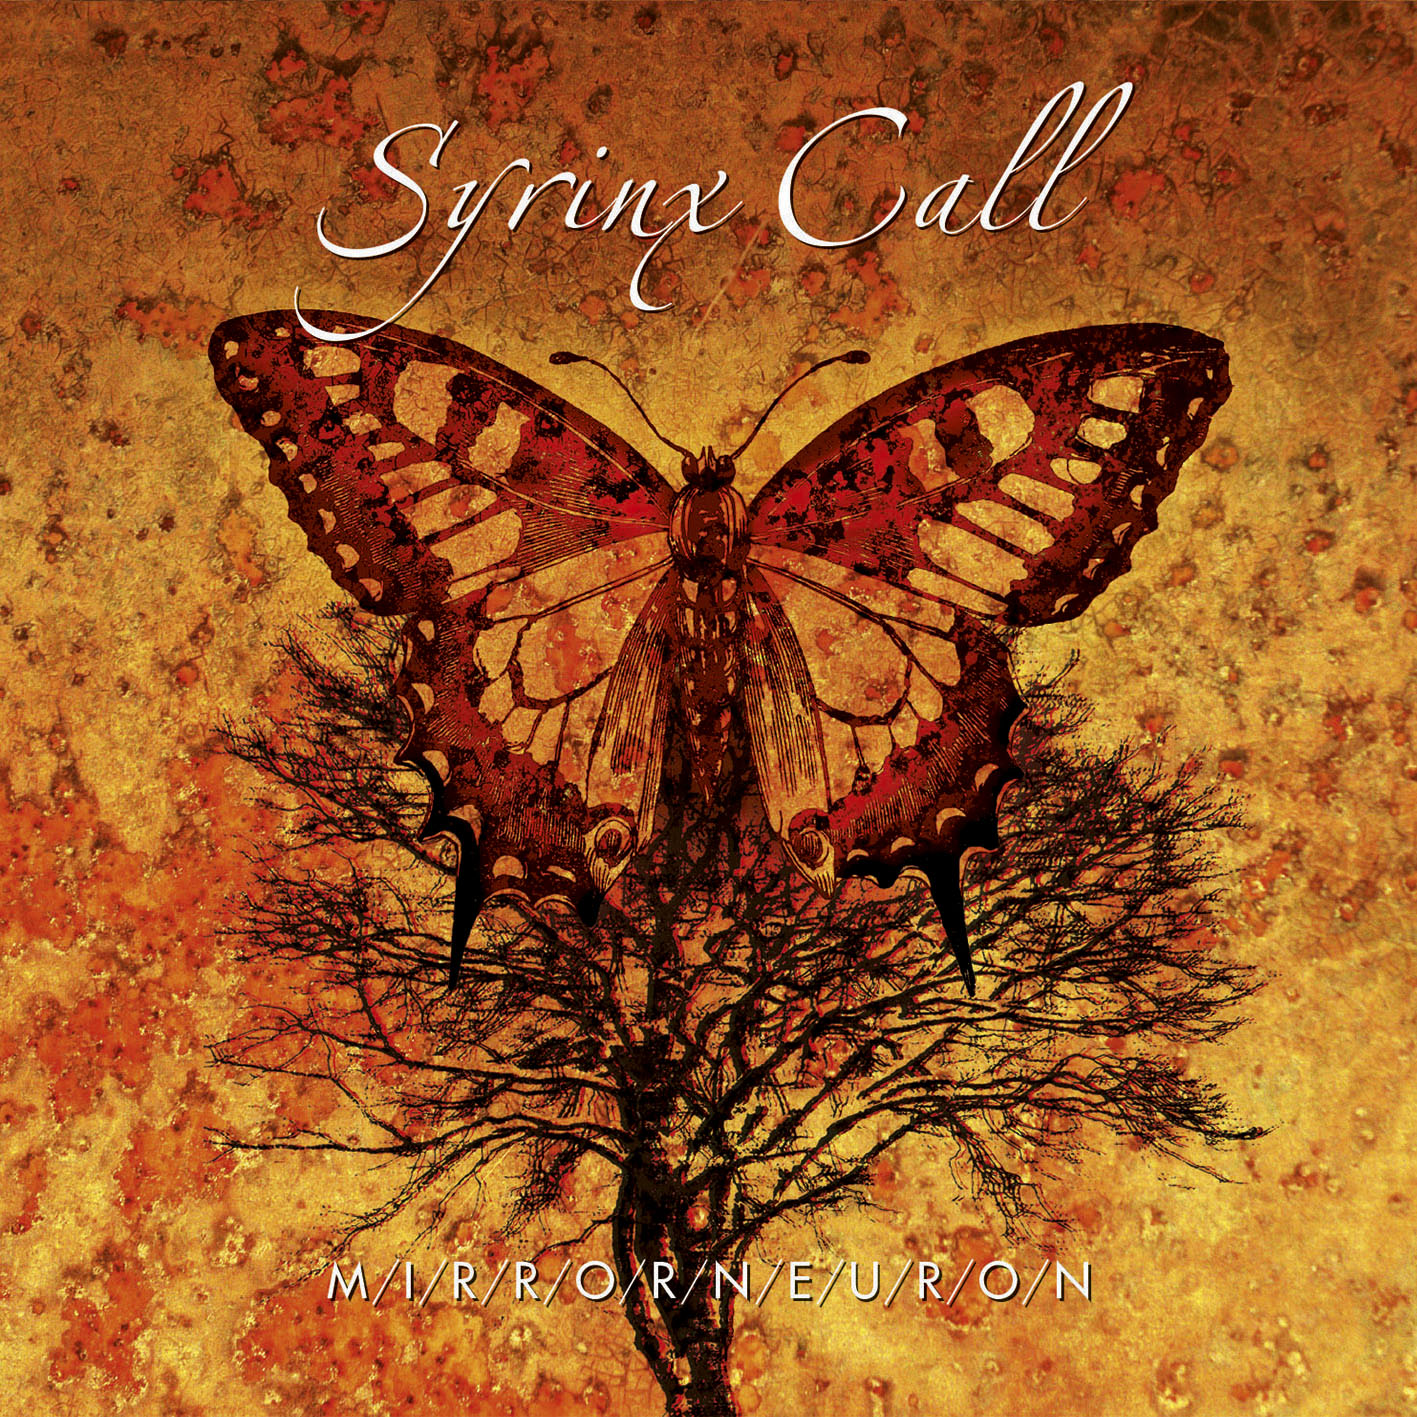 Unser 3. Syrinx Call Album, veröffentlicht am 29. Januar! Hört doch mal rein! :-)))